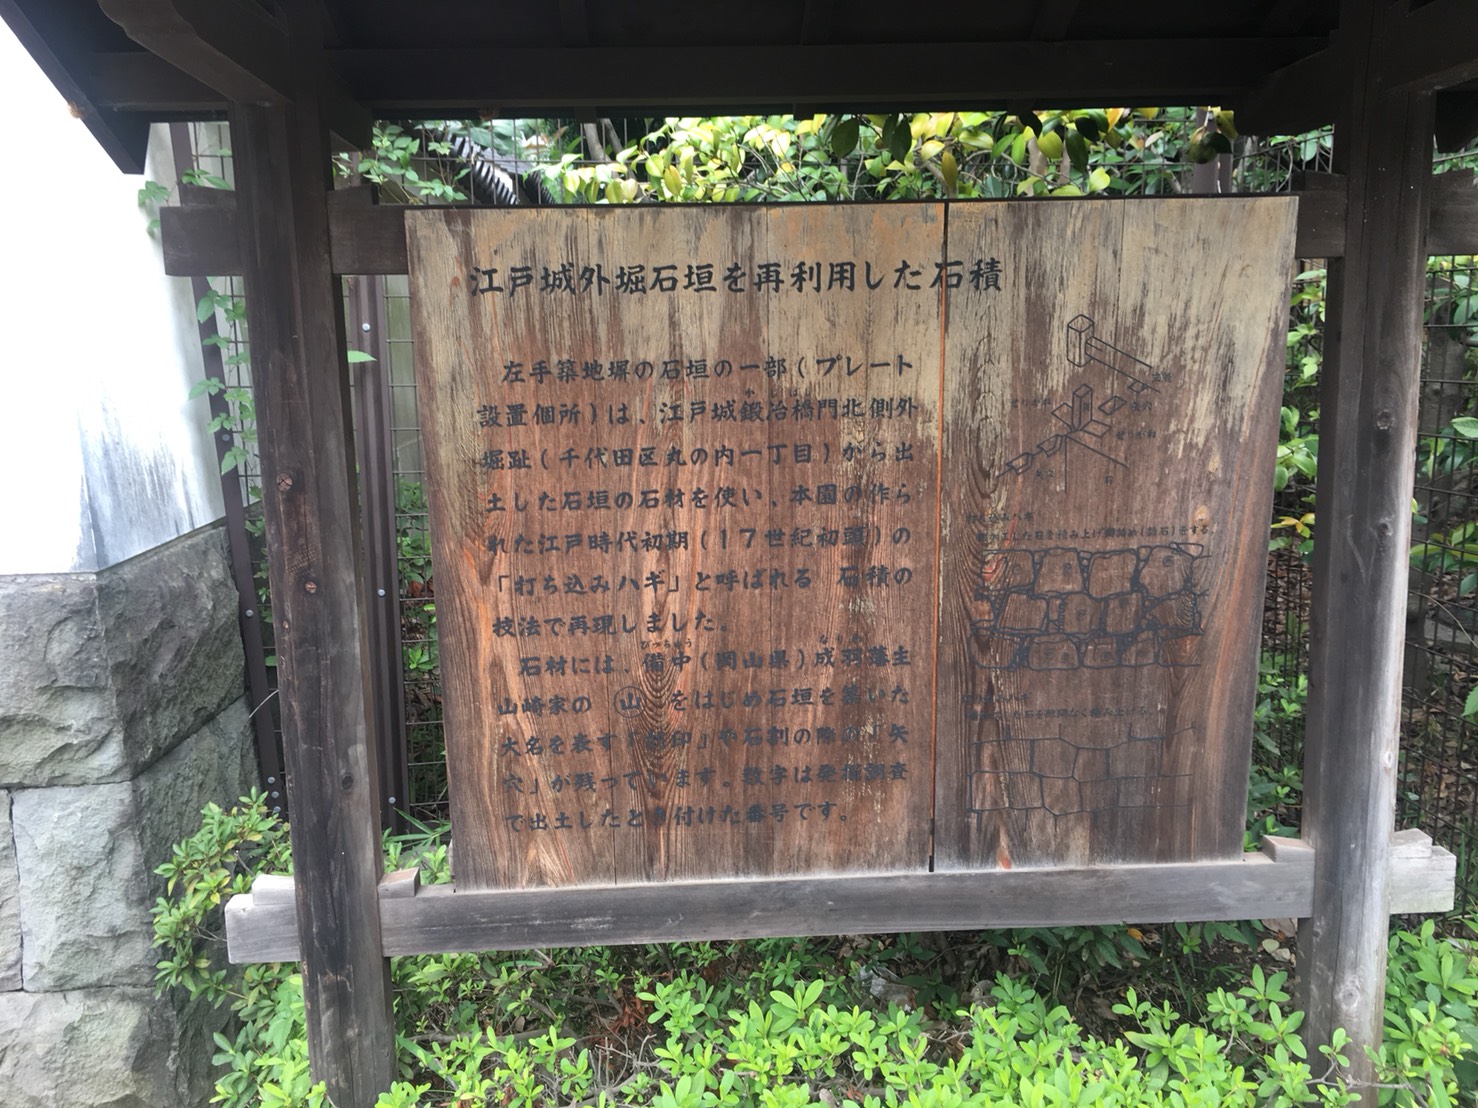 【飯田橋駅】江戸時代の中国趣味豊かな景観で一句「小石川後楽園」の石垣の説明書き